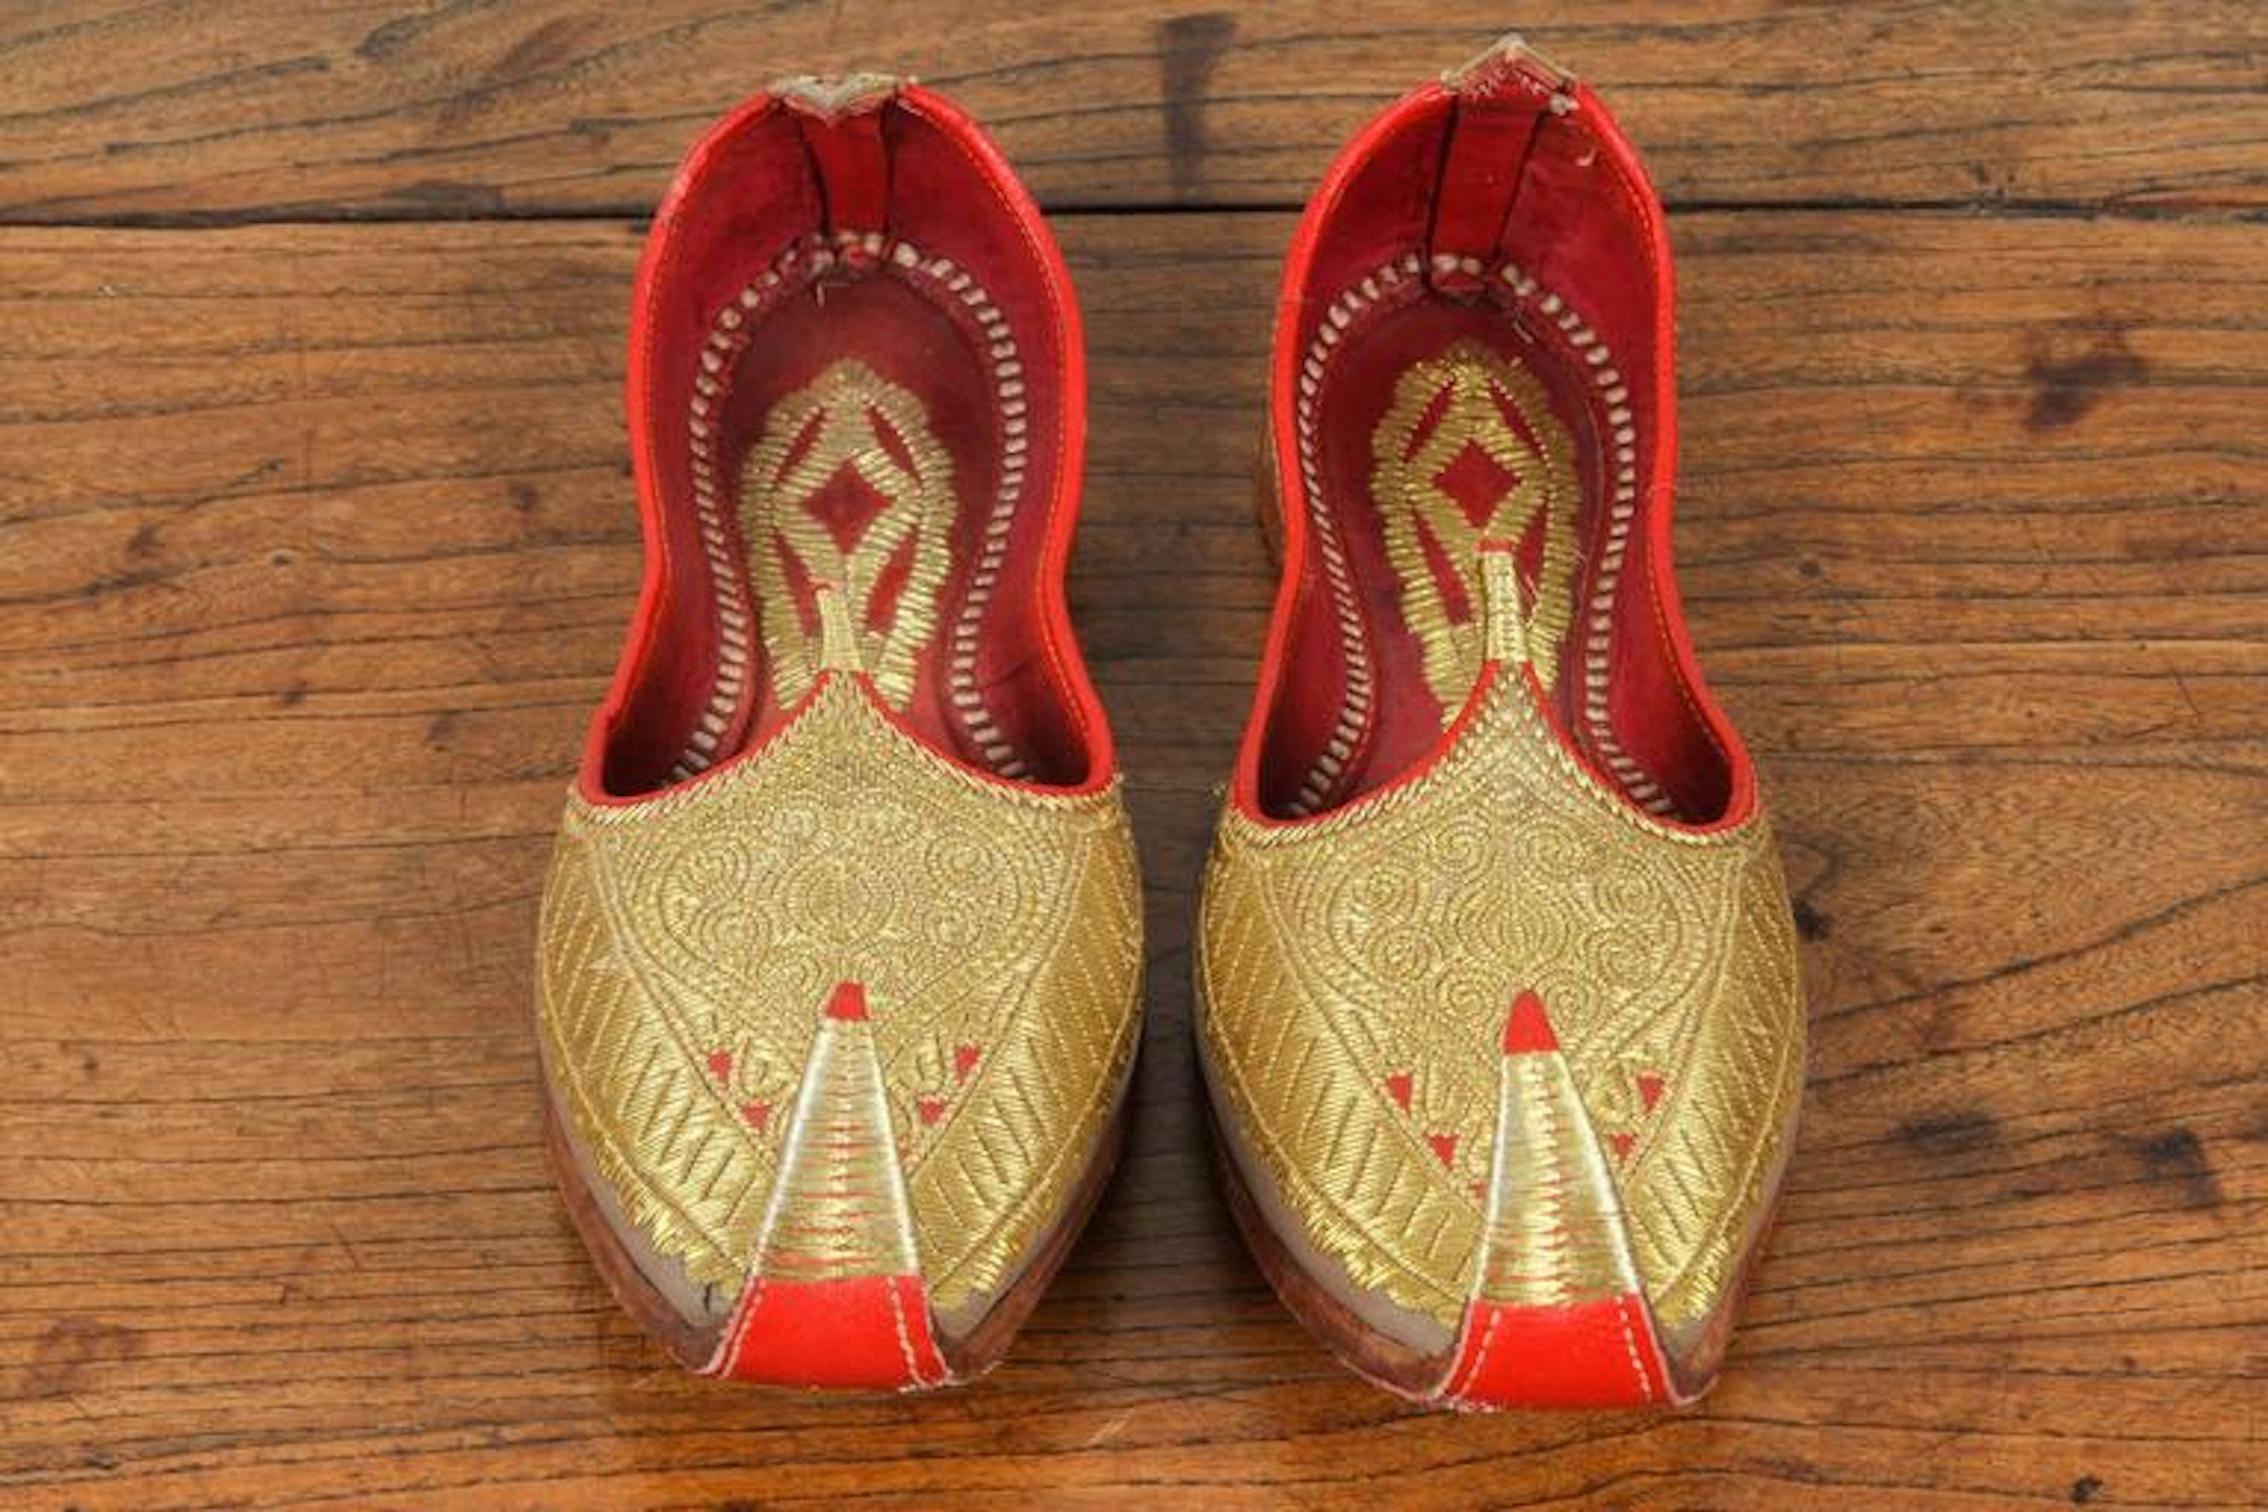 Erstaunlich Vintage maurischen nahöstlichen Gold und rot Leder bestickt Schuhe. 
Zeremonielle königliche Hochzeitspantoffeln aus Leder, bestickt mit Goldfäden.
Aladdin, Ali Baba Arabischer Flaschengeist Ottomanischer Stil Klassisch gelockte Zehen